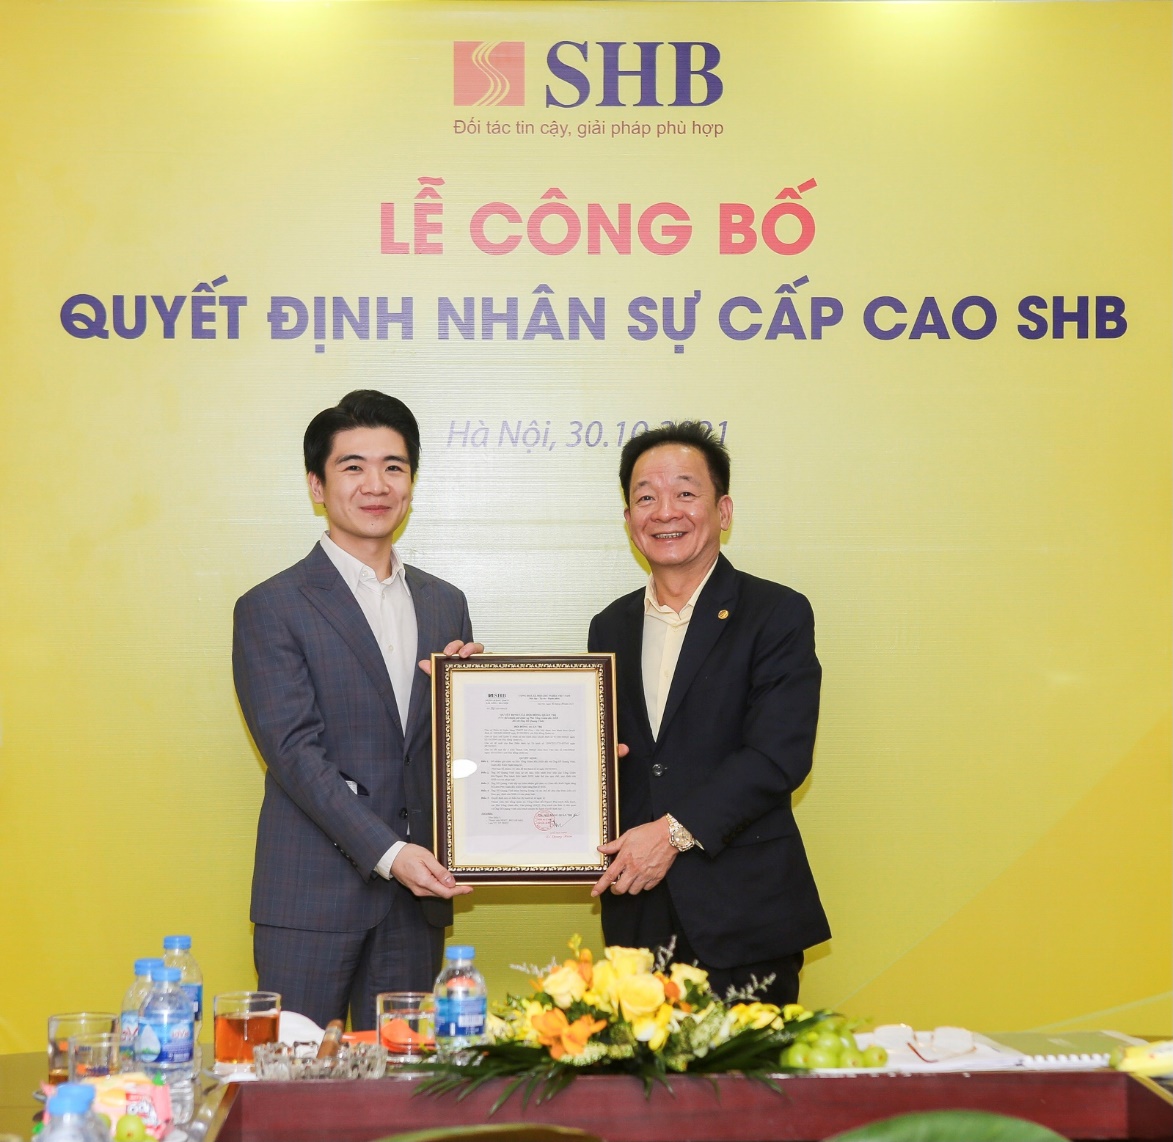 SHB bổ nhiệm ông Đỗ Quang Vinh làm Phó Tổng Giám đốc - Ảnh 1.